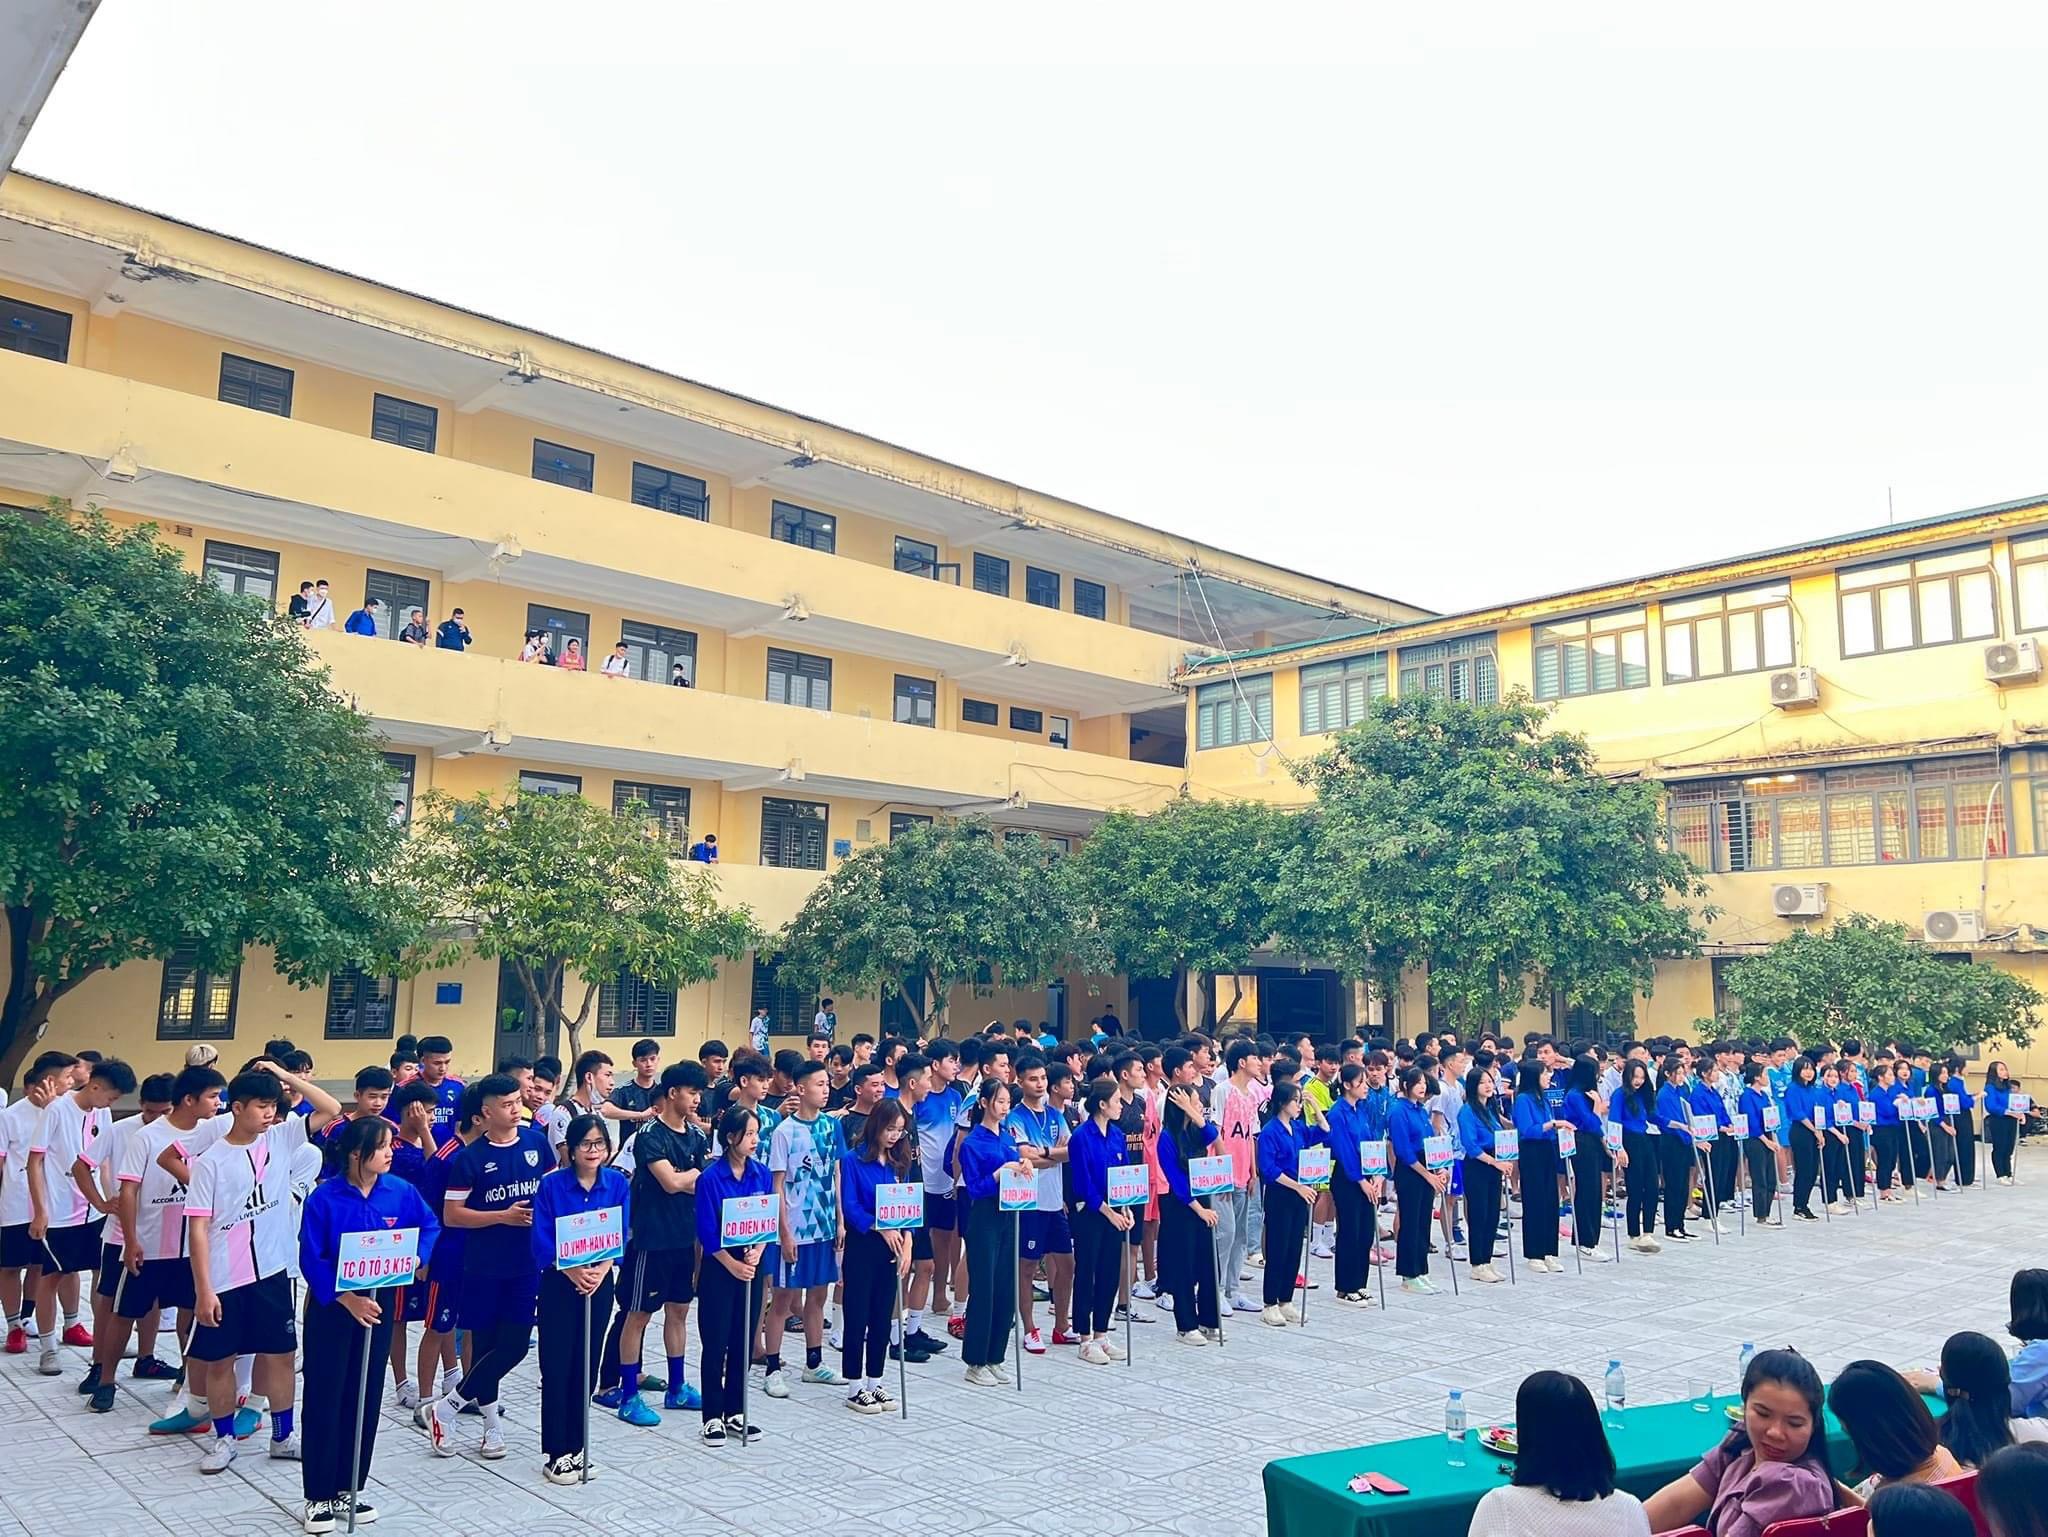  Đoàn Thanh niên trường Cao đẳng Việt – Đức Nghệ An tổ chức các hoạt động chào mừng 40 năm ngày Nhà giáo Việt Nam (20/11/1982-20/11/2022) và hướng đến Kỷ niệm 50 năm thành lập Trường (1972 - 2022)